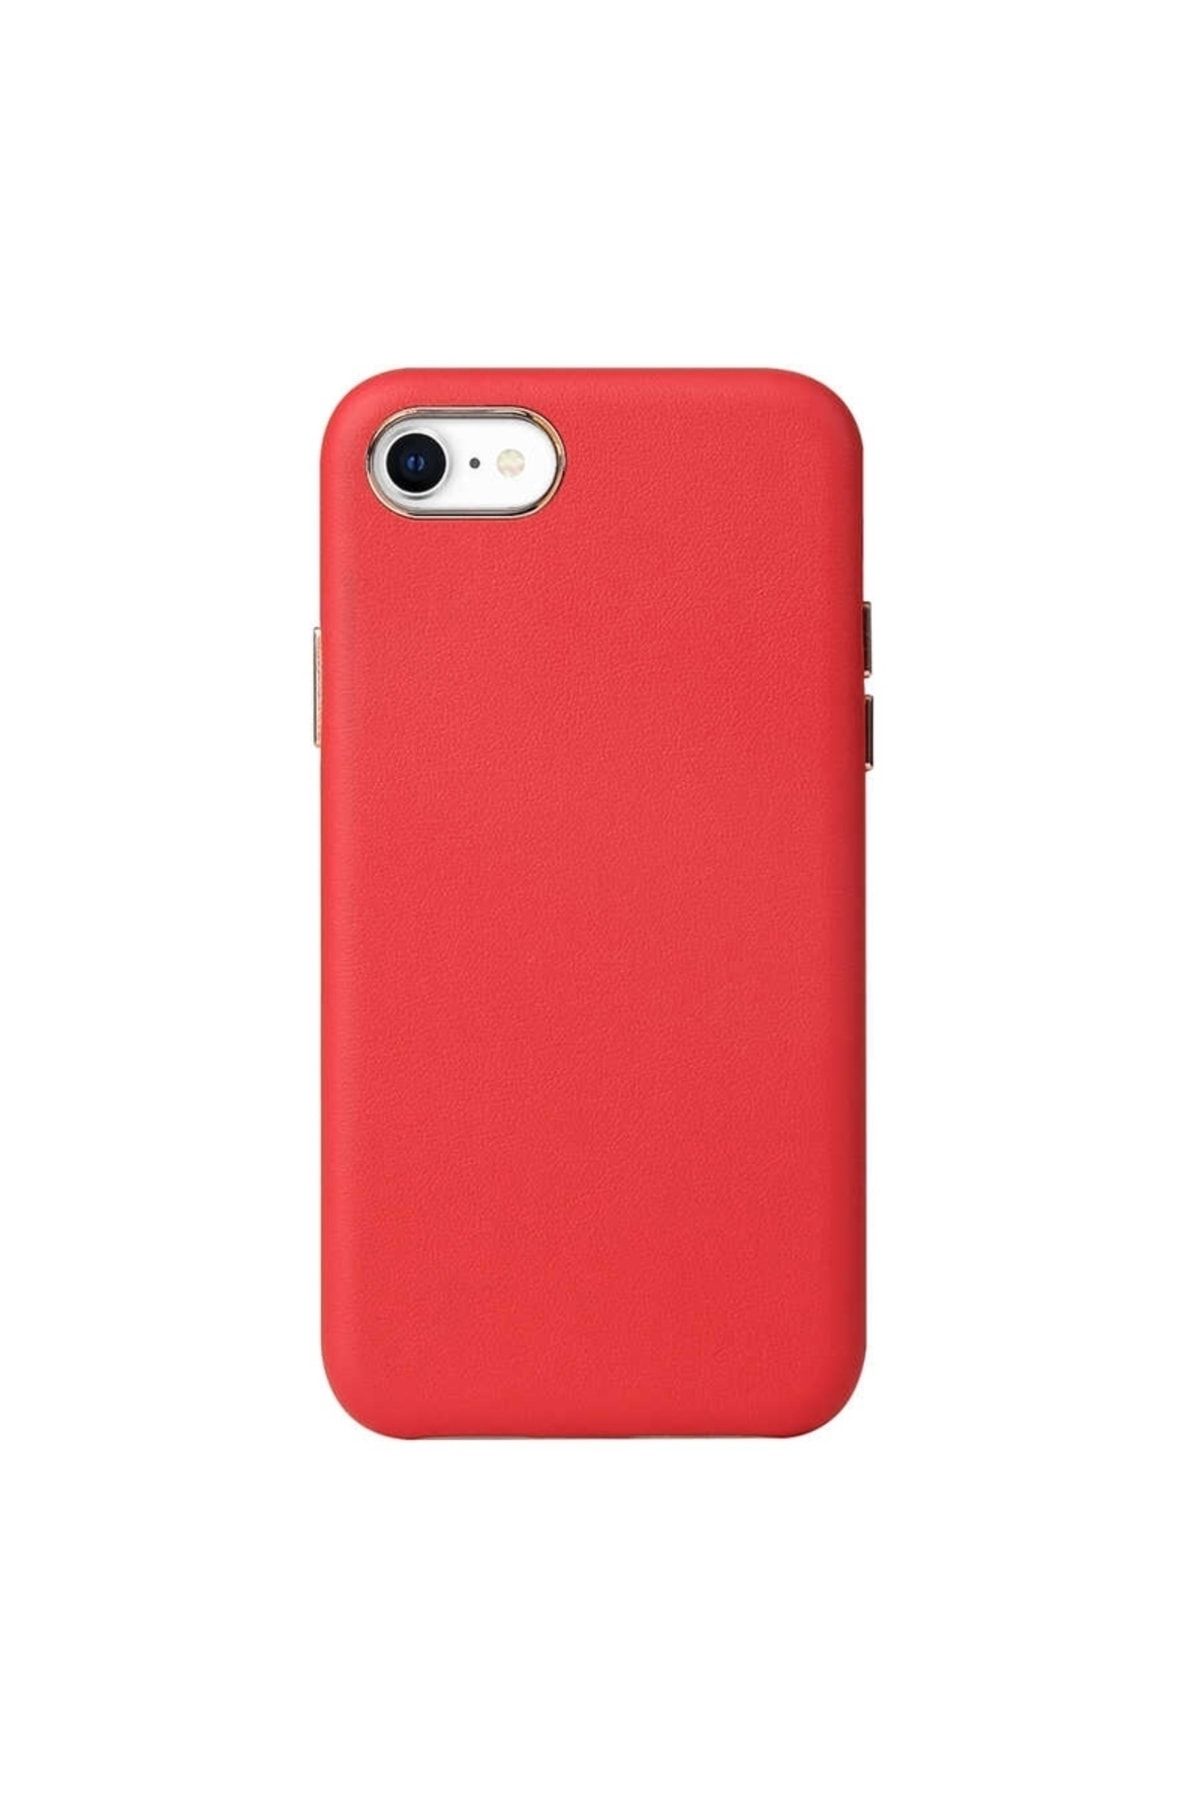 Gpack Apple iPhone 8 Kılıf Eyzi Deri Silikon Lüx Tasarım Kırmızı